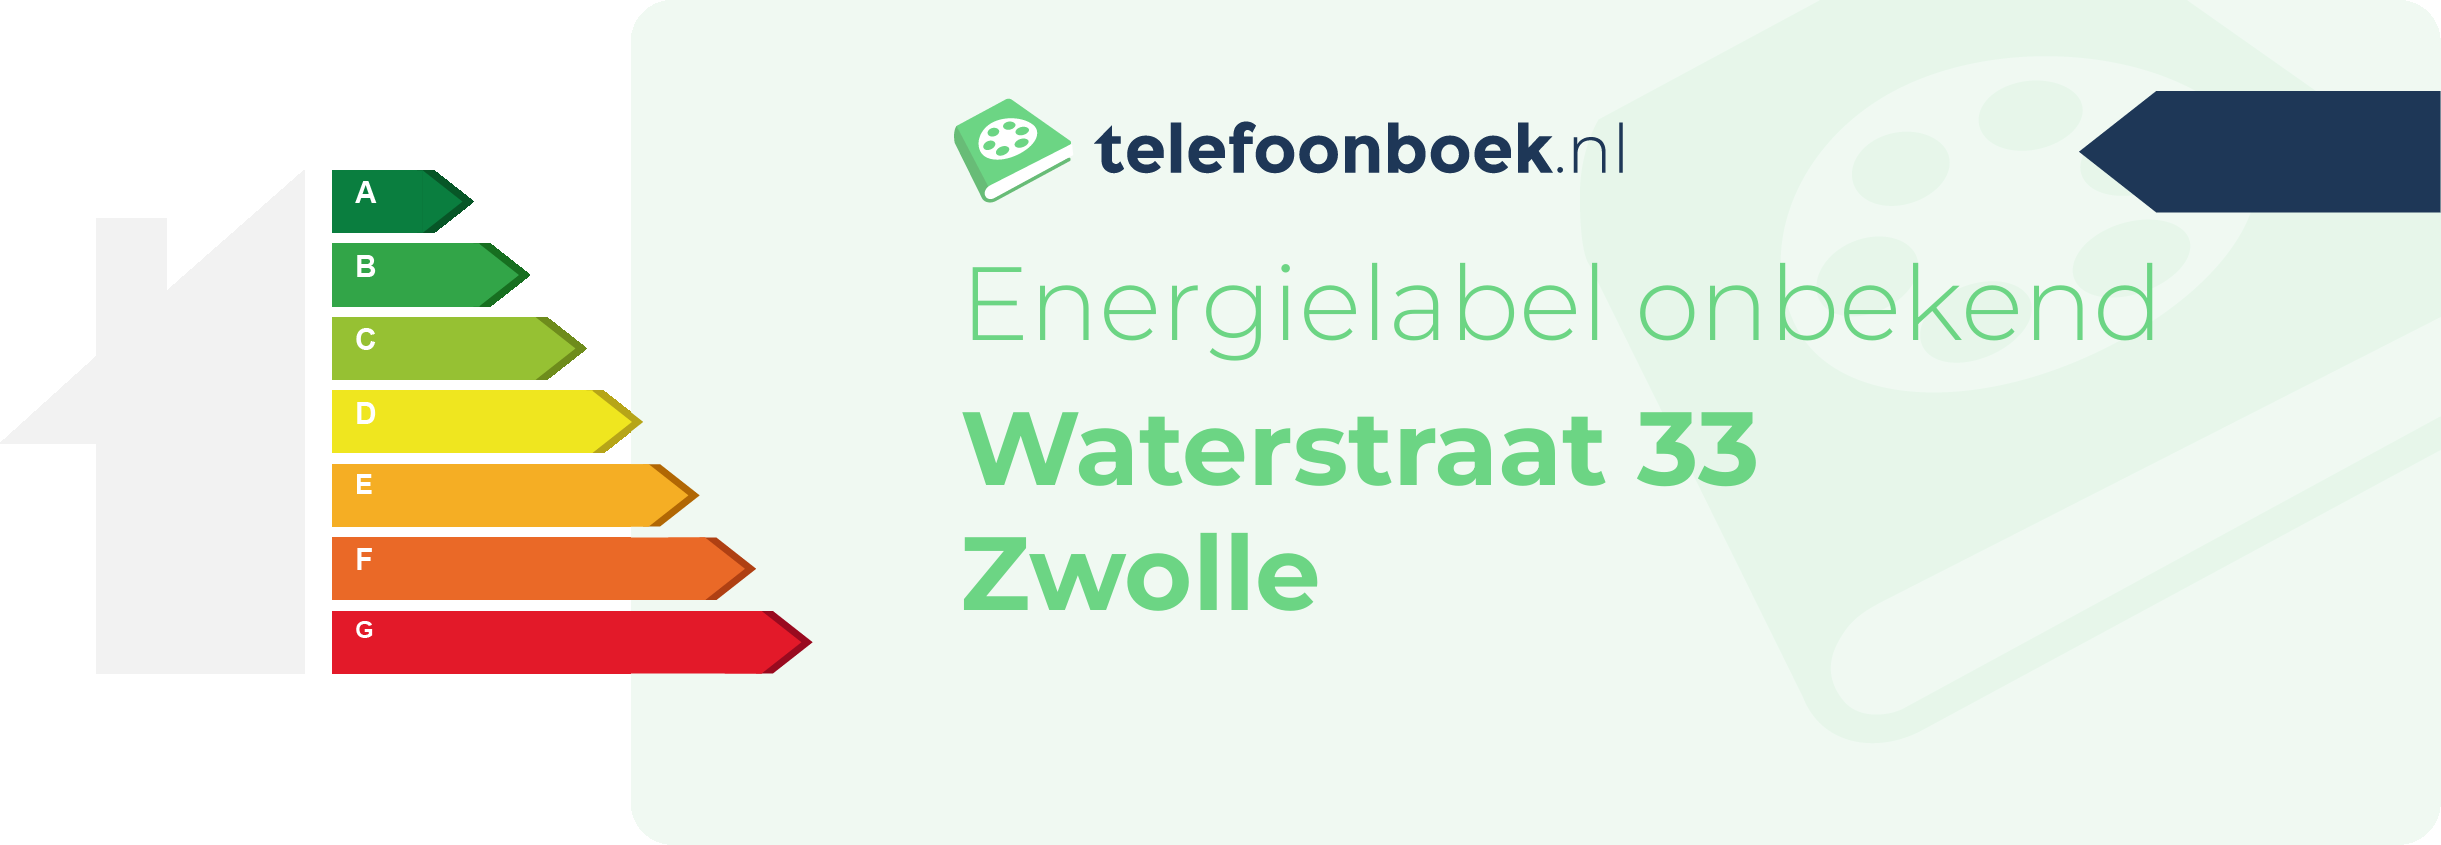 Energielabel Waterstraat 33 Zwolle